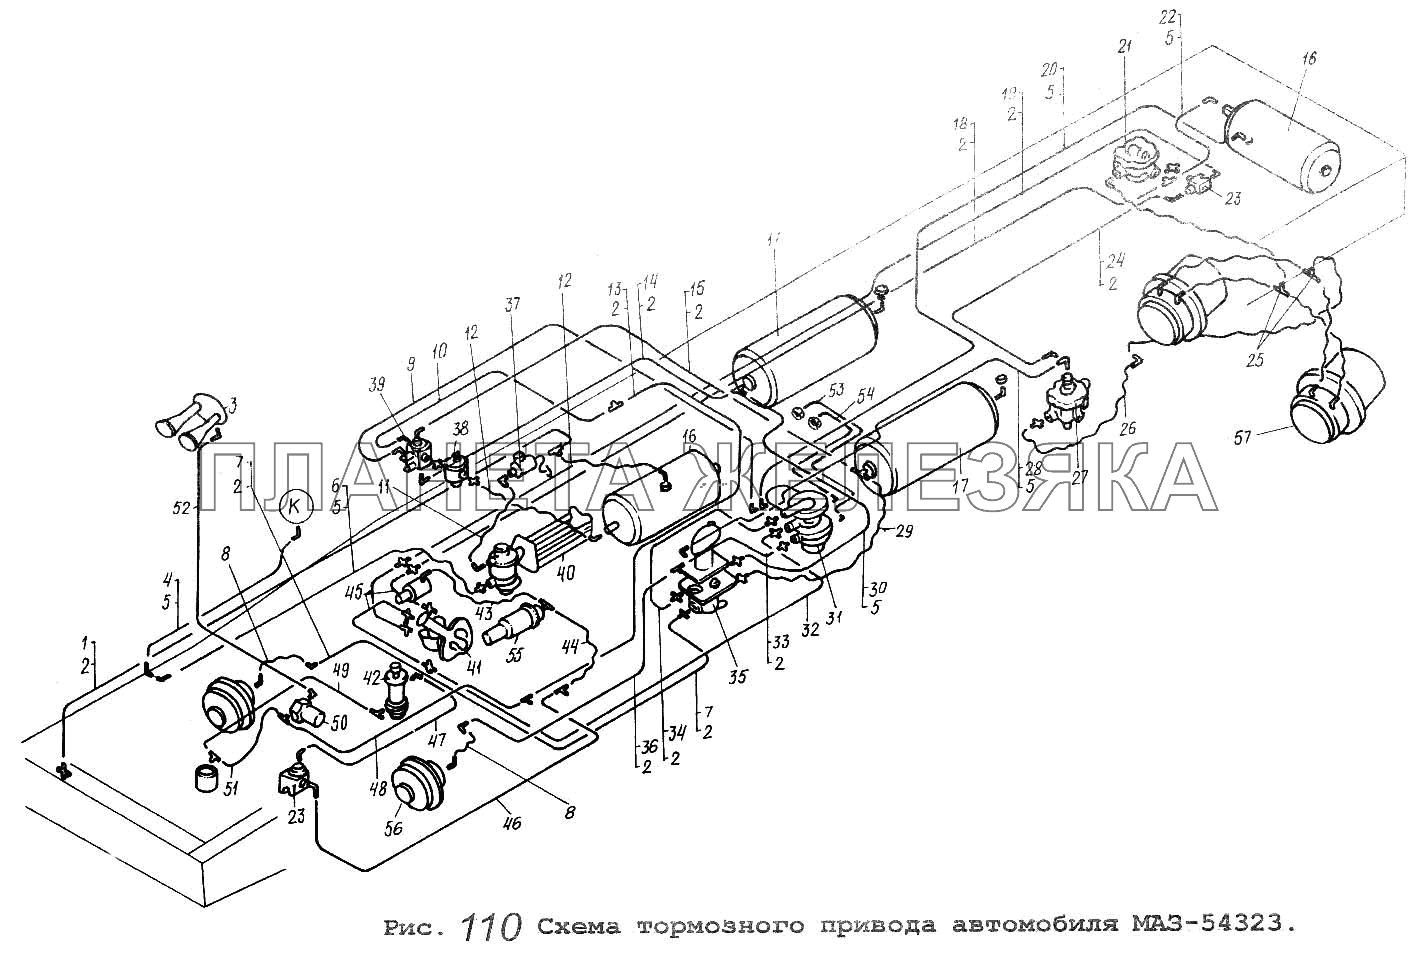 Схема тормозного привода автомобиля МАЗ-54323 МАЗ-64229